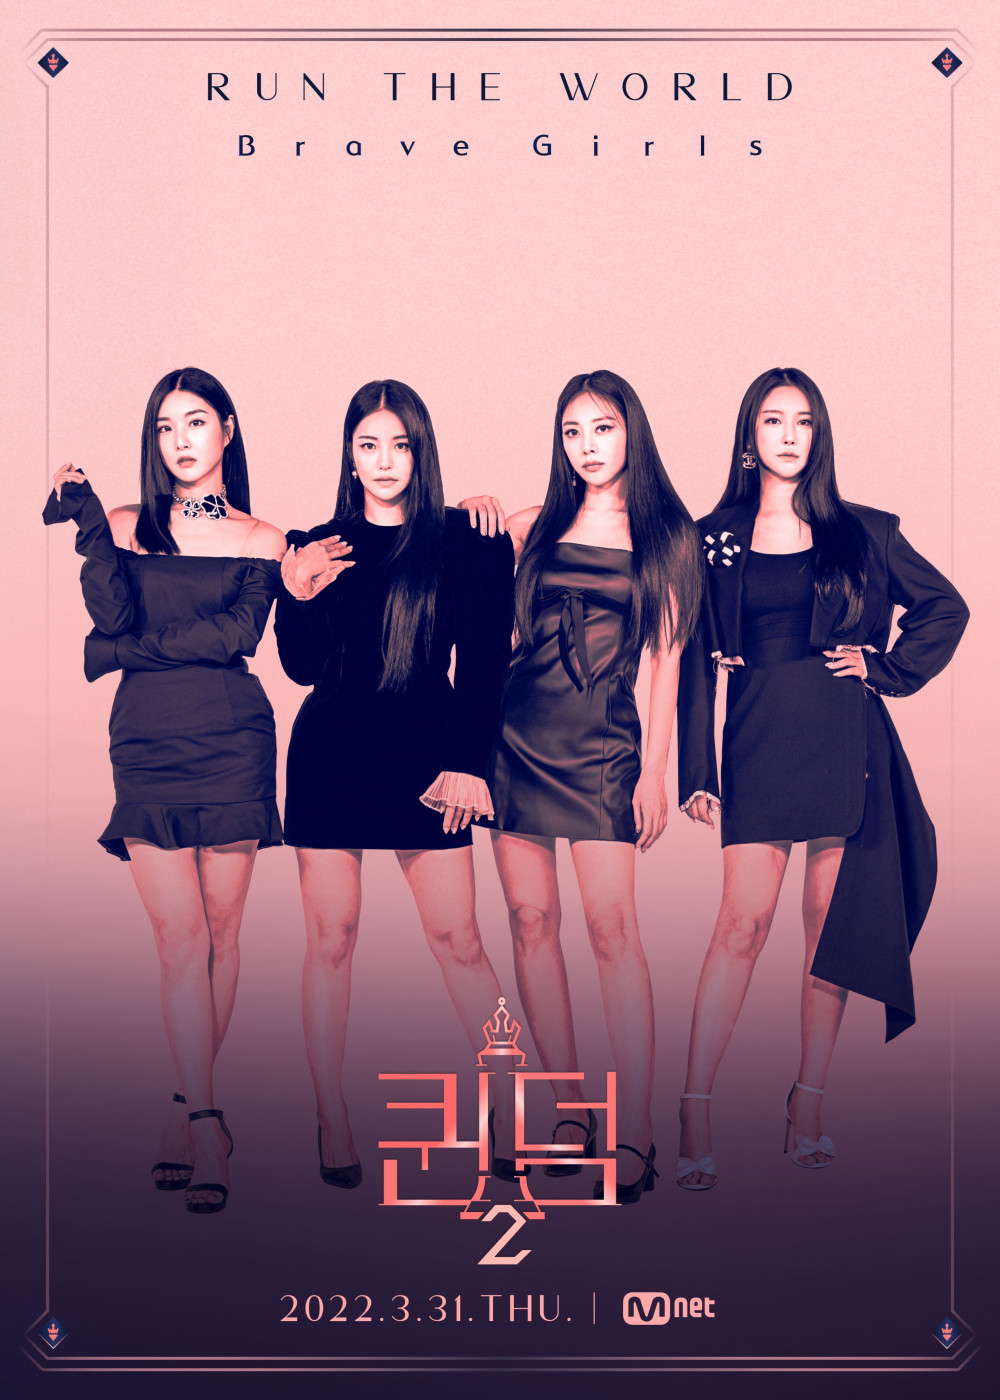 Mnet выпустили тизер-постеры 6 артистов-участников второго сезона шоу Queendom